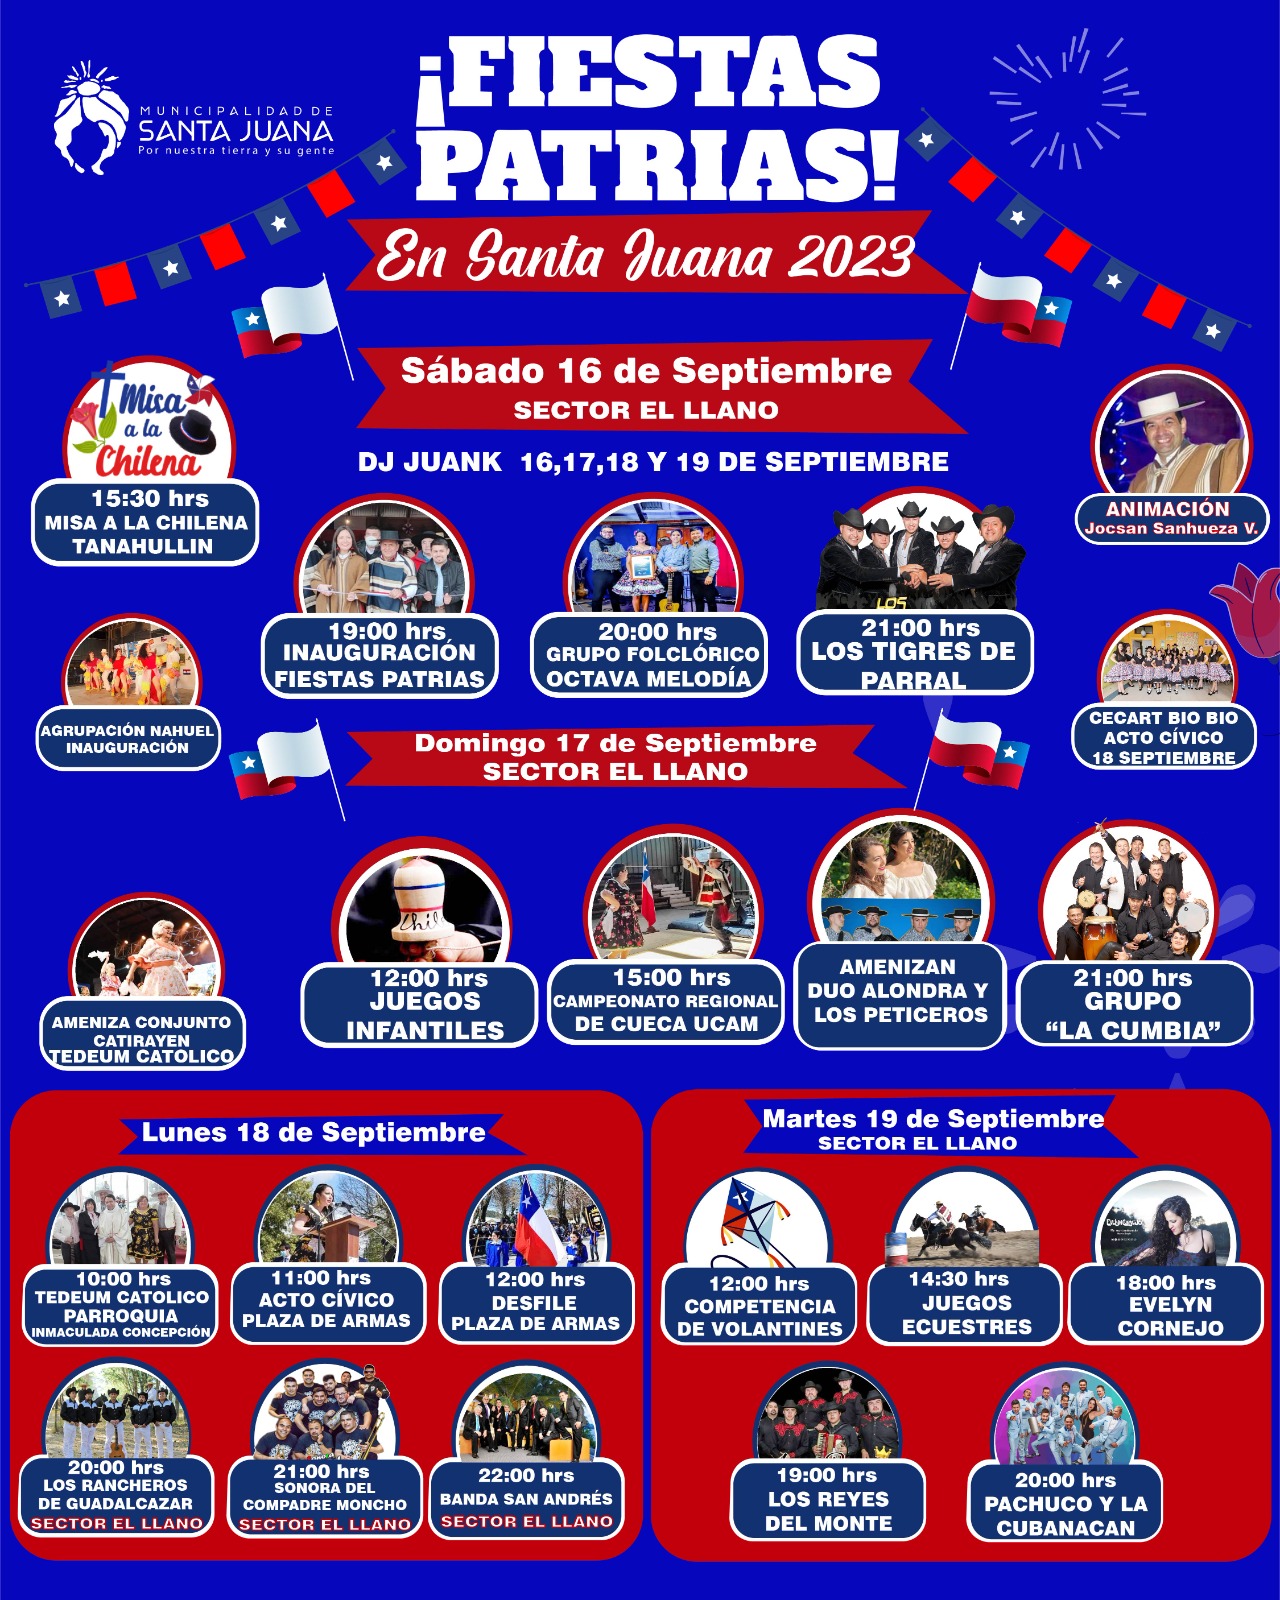 Fiestas Patrias en Santa Juana